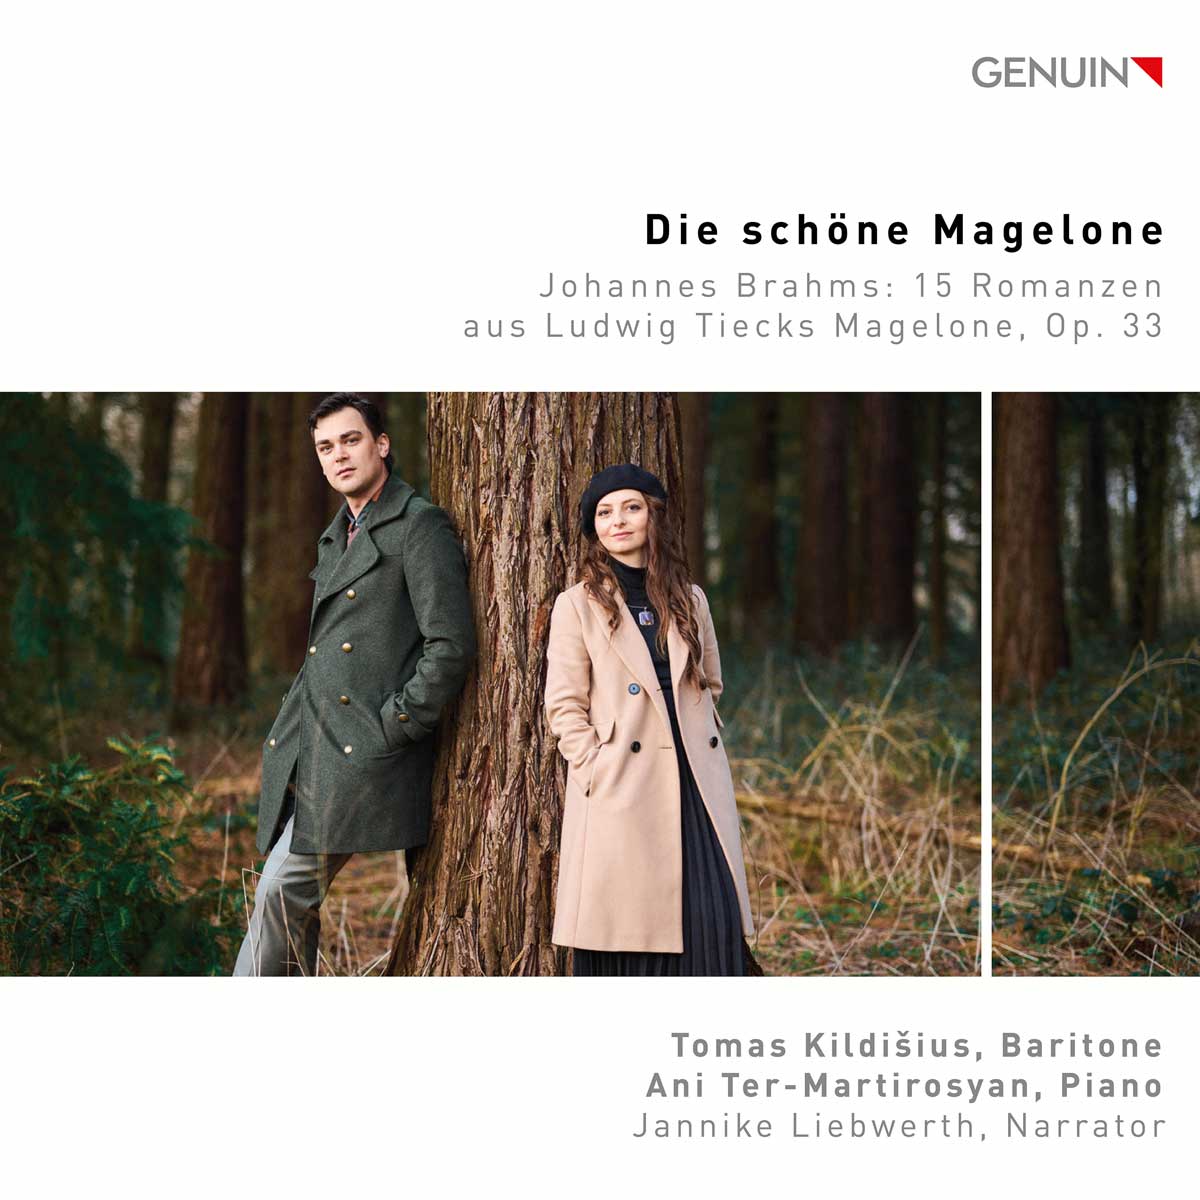 CD album cover 'Die schöne Magelone' (GEN 23844) with Tomas Kildišius, Ani Ter-Martirosyan, Jannike Liebwerth